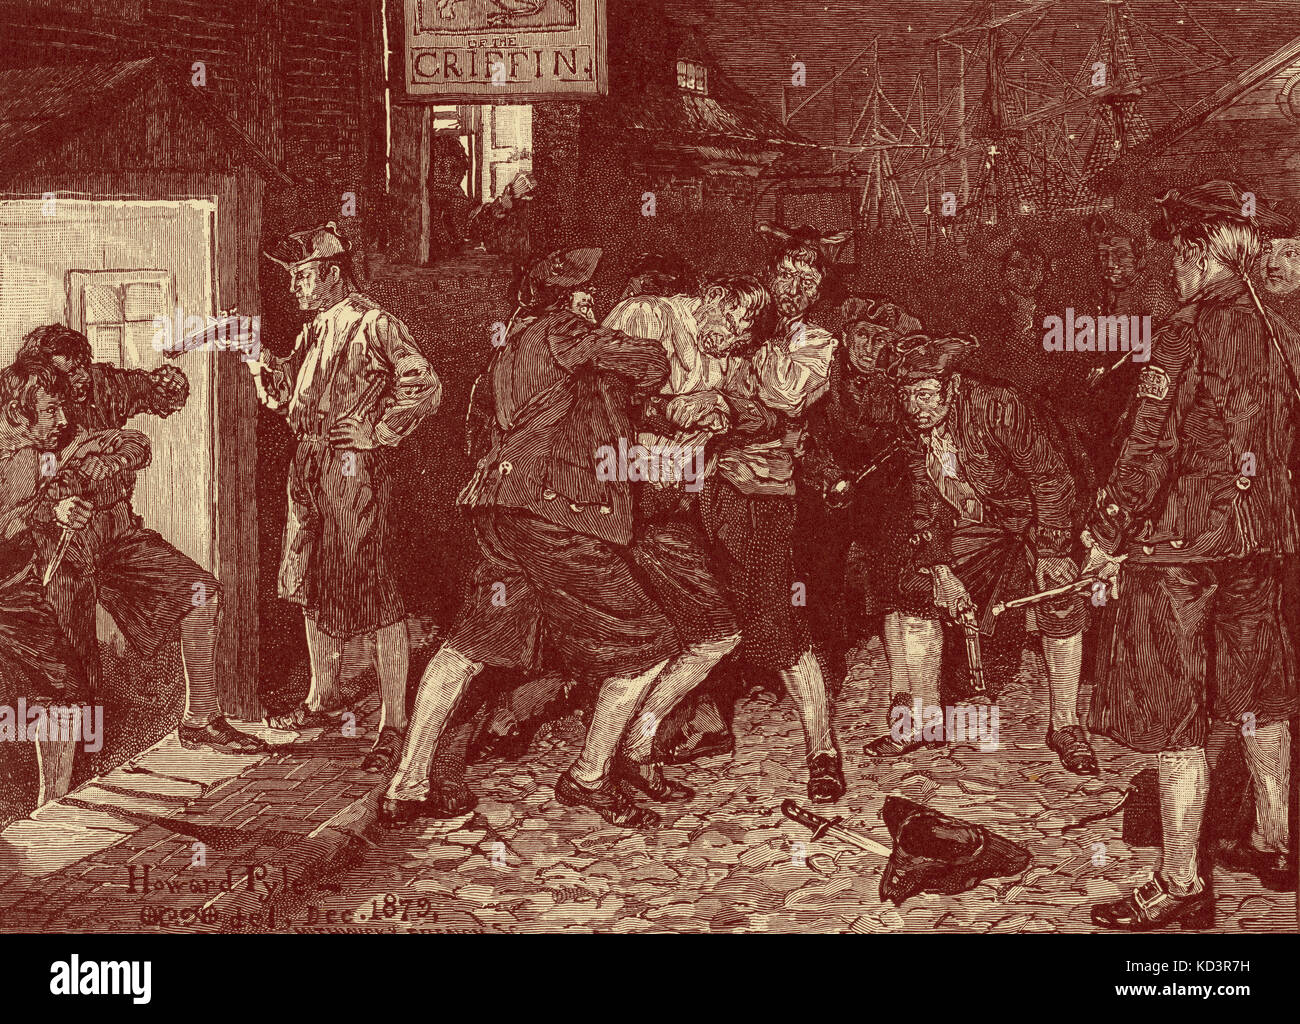 Banda stampa, New York sotto il dominio coloniale britannico, 1757, durante la Guerra dei sette anni. Illustrazione di Howard Pyle, 1880 Foto Stock